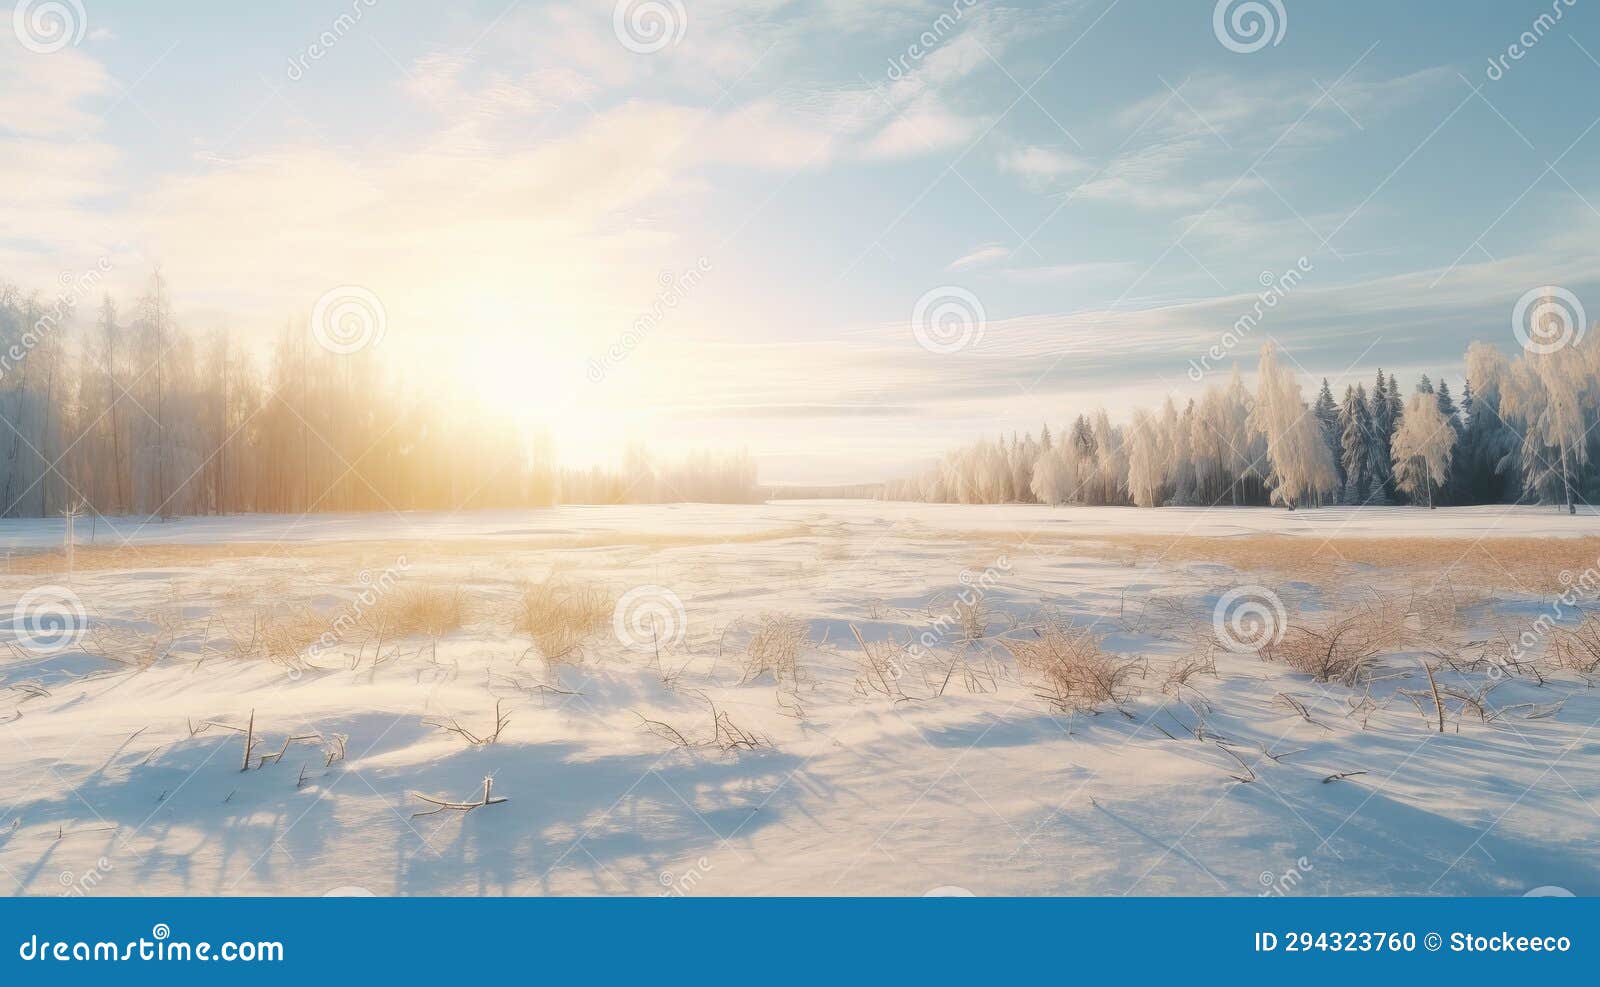 dreamy winter sun over rural finnish landscape